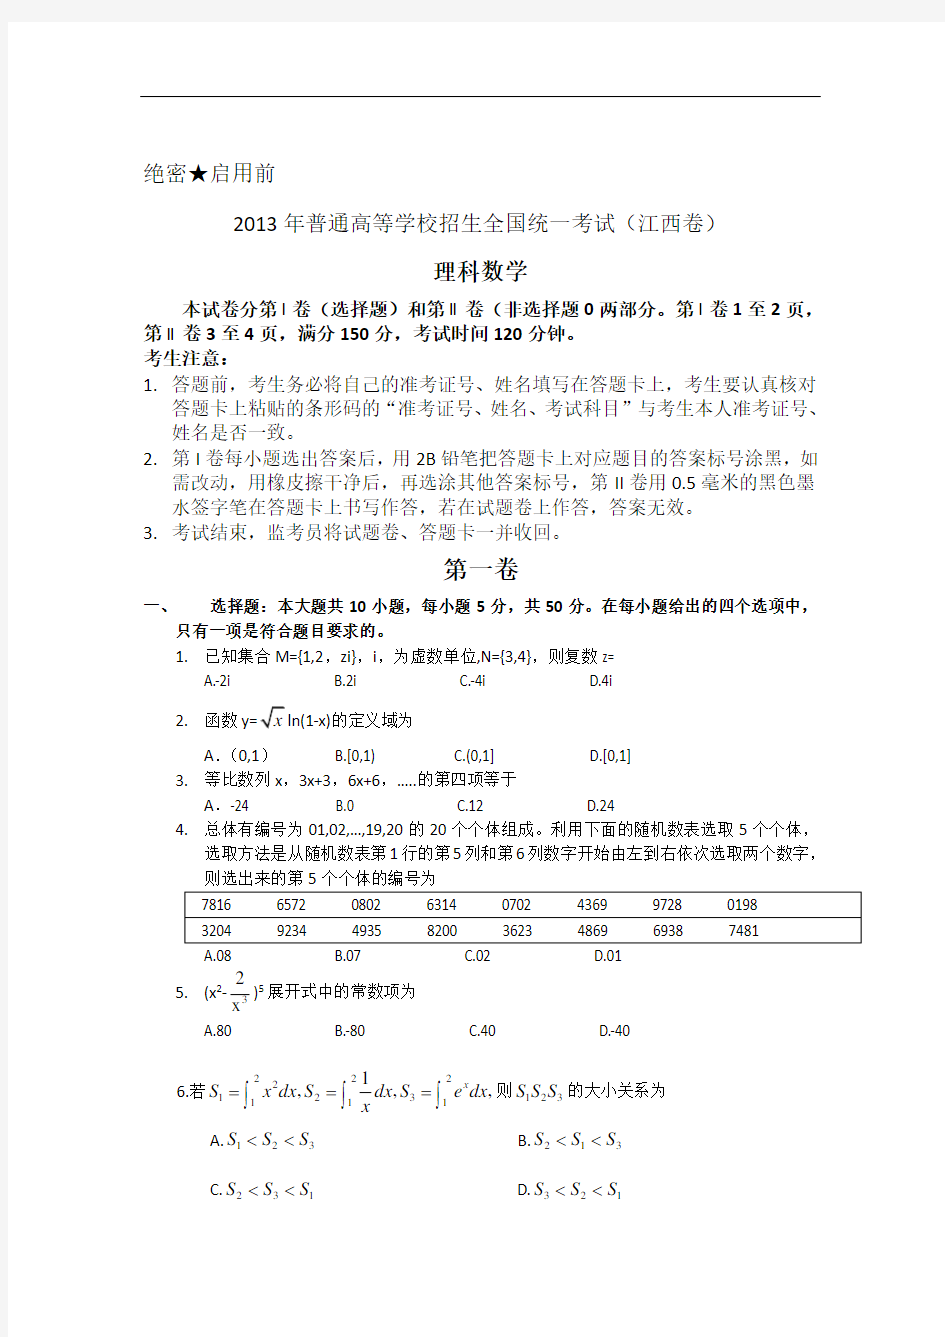 2013年高考真题——理科数学(江西卷) Word版含答案